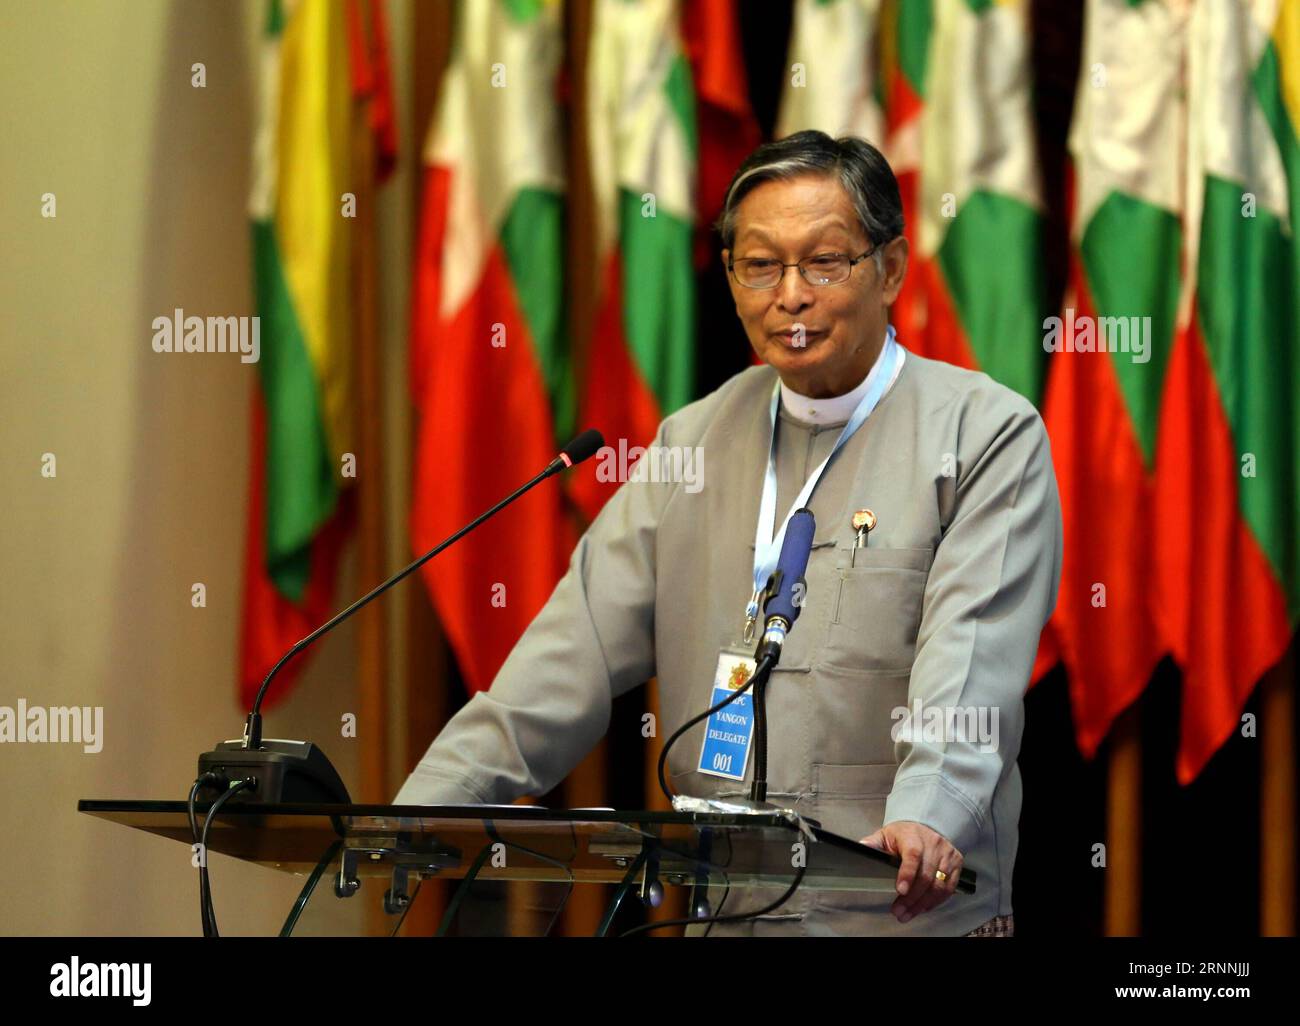 (170718) -- , 18. Juli 2017 -- das Büro des Staatsräteamtes von Myanmar, U Kyaw Tint Swe, spricht während eines Treffens mit den Leitern diplomatischer Missionen und UN-Agenturen in Myanmar über die Rakhine-Frage in Myanmar, 18. Juli 2017. U Aung) (yy) MYANMAR-- TREFFEN yangon PUBLICATIONxNOTxINxCHN 18. Juli 2017 Minister des Büros des Staatsberaters von Myanmar U Kyaw Tint SWE sprechen während eines Treffens mit den Leitern der diplomatischen Missionen und VN-Agenturen in Myanmar ÜBER die Rakhine-Frage am 18. Juli 2017 U Aung yy Myanmar treffen Yangon PUBLICATIONxNOTxINxCHN Stockfoto